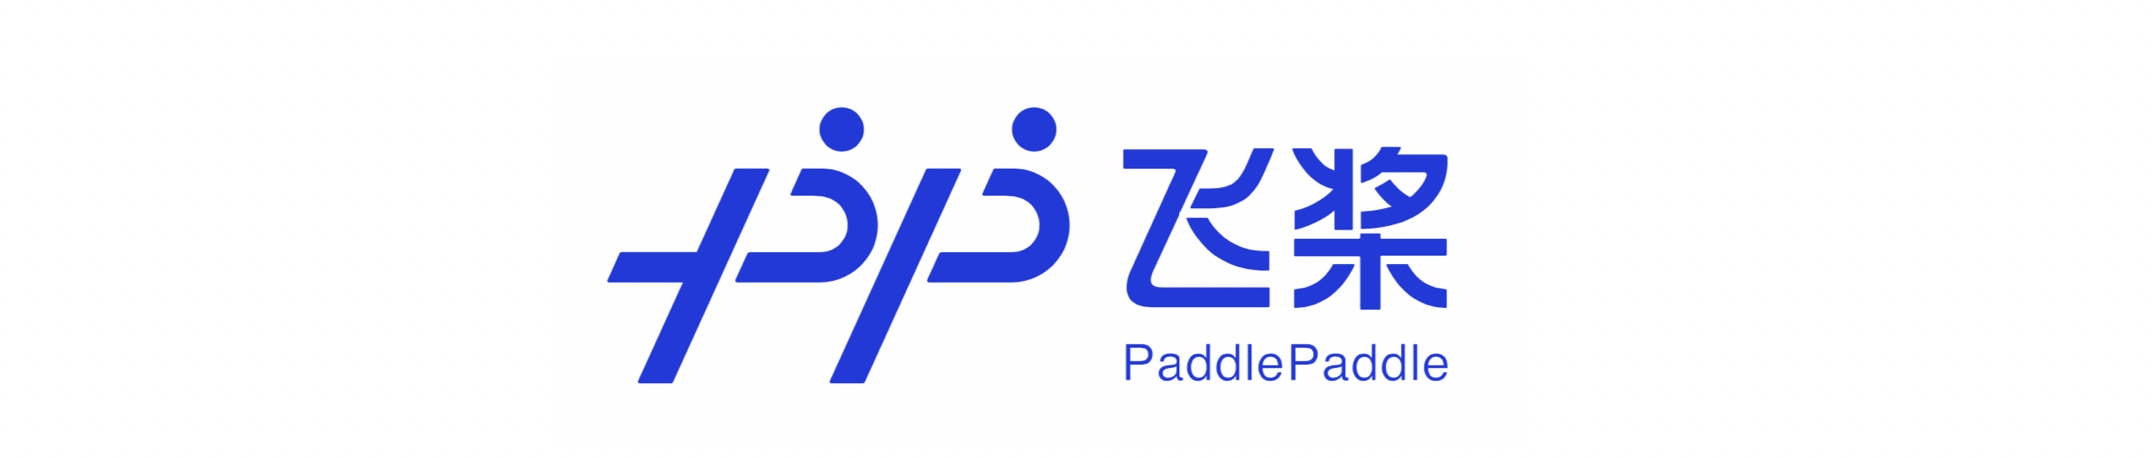 PaddlePaddle 로고